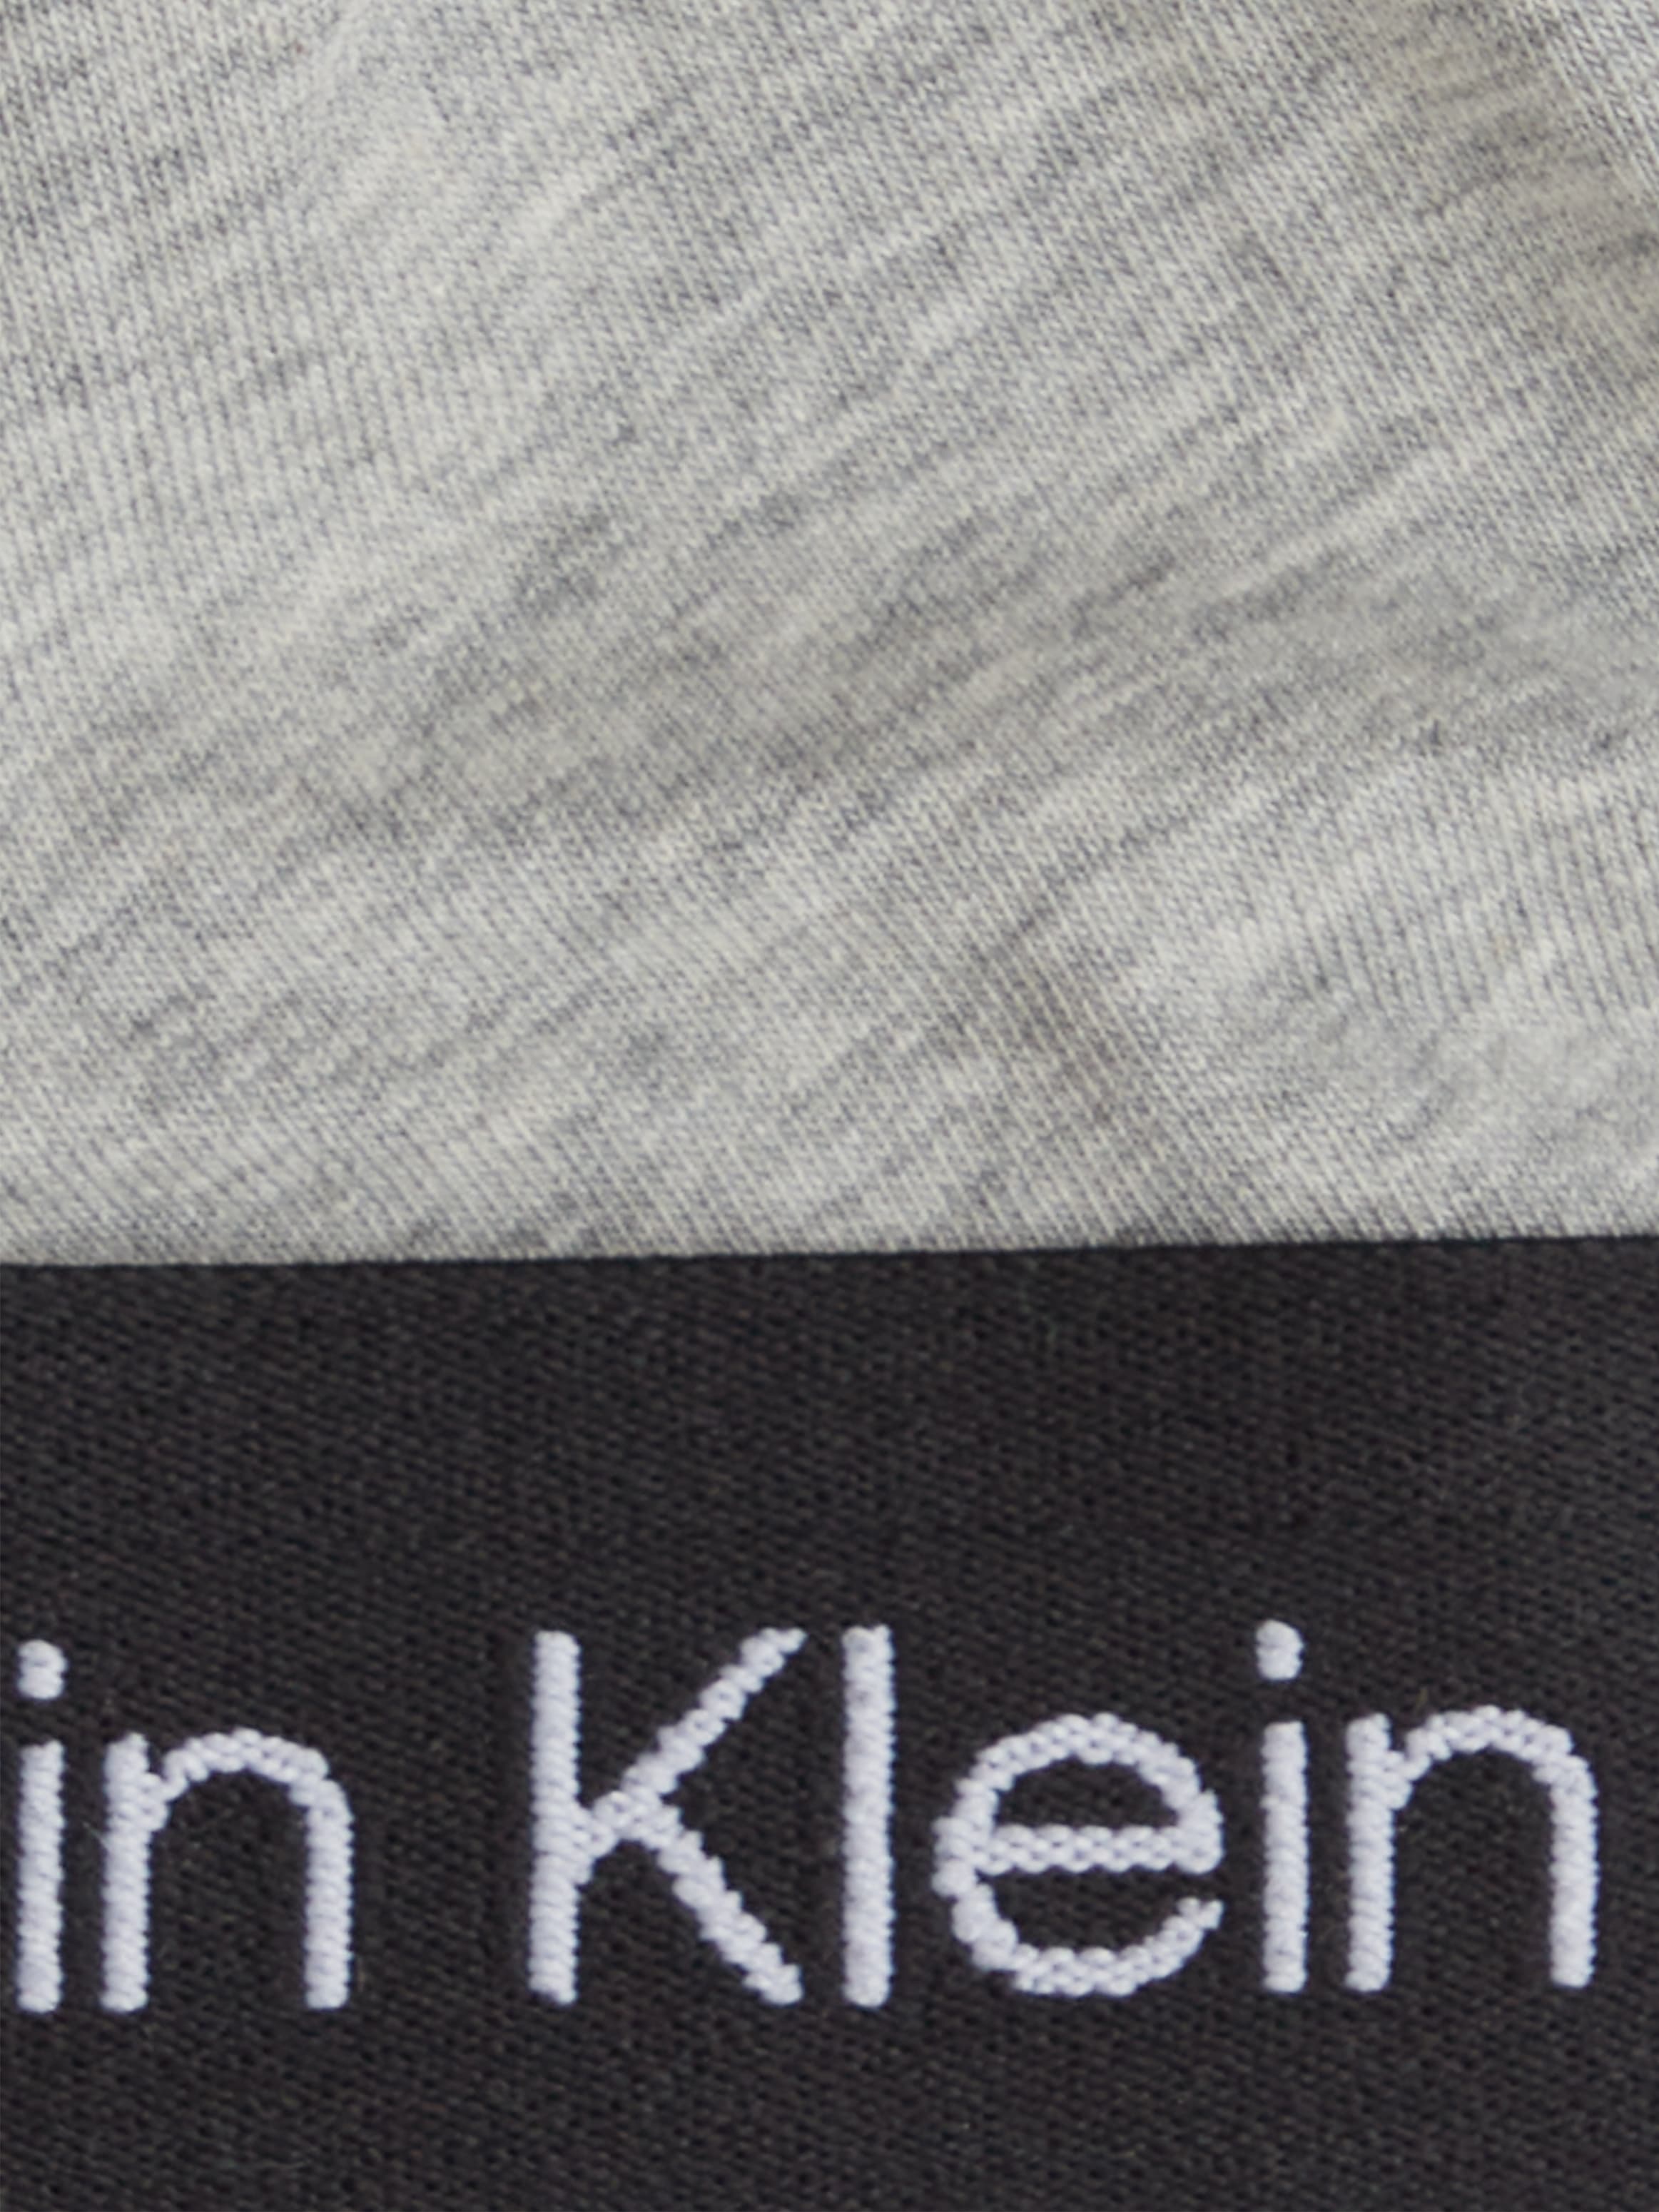 Calvin Klein Underwear Triangel-BH »UNLINED TRIANGLE«, mit Logoschriftzügen auf dem Unterband